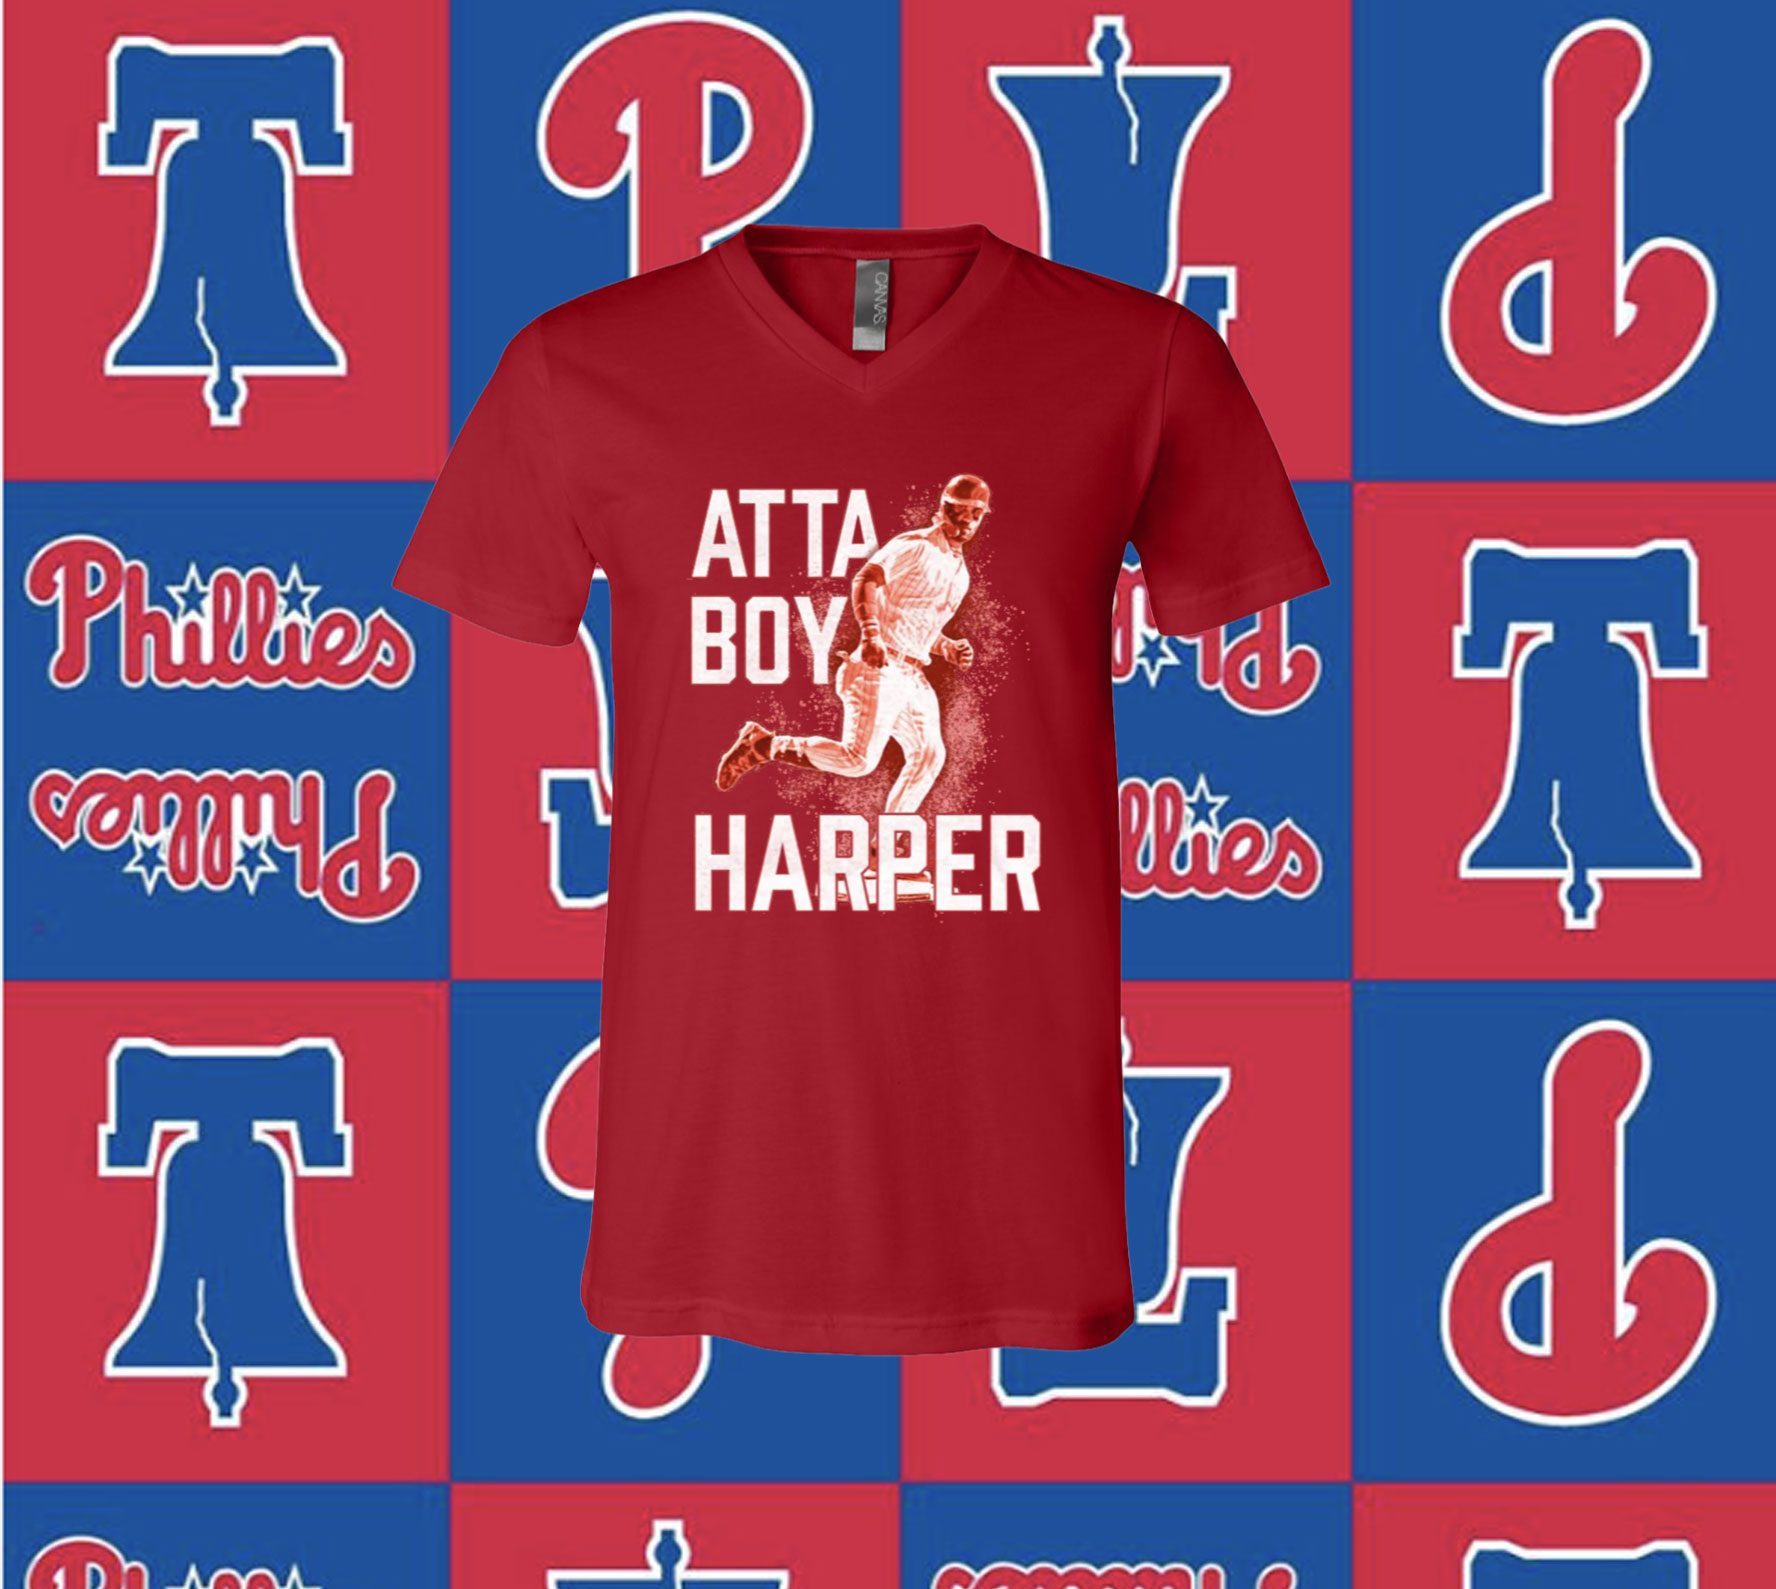 Phillies vintage logo tshirt, Phillies fan tshirt, Philadelphia